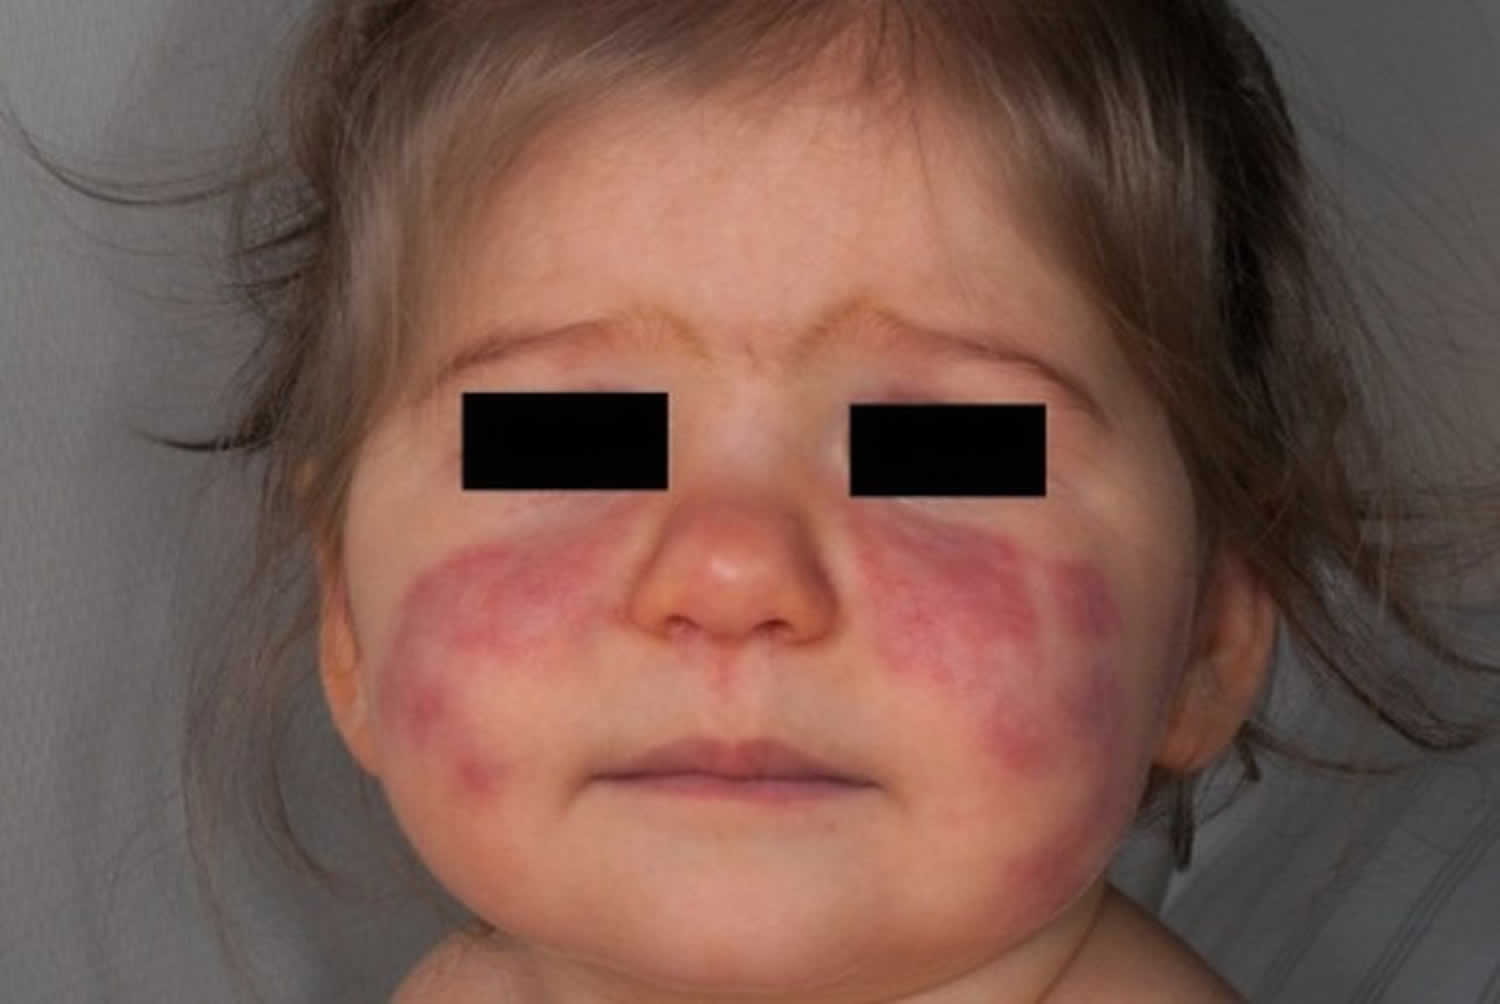 pediatric lupus rash